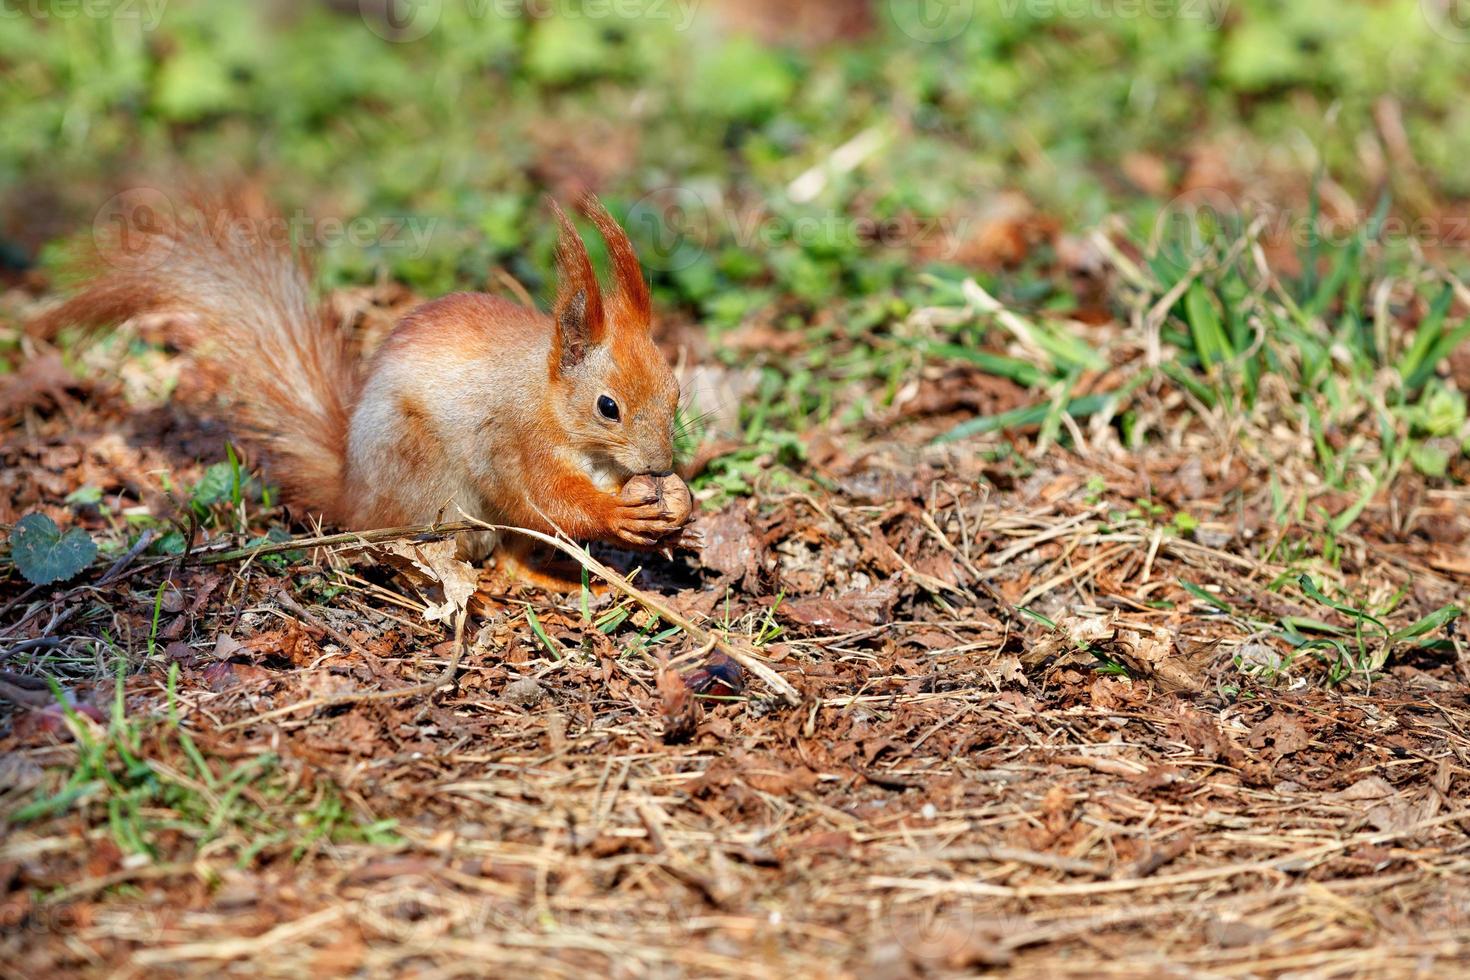 uno scoiattolo arancione ha trovato una noce tra le foglie cadute e la sta masticando. foto